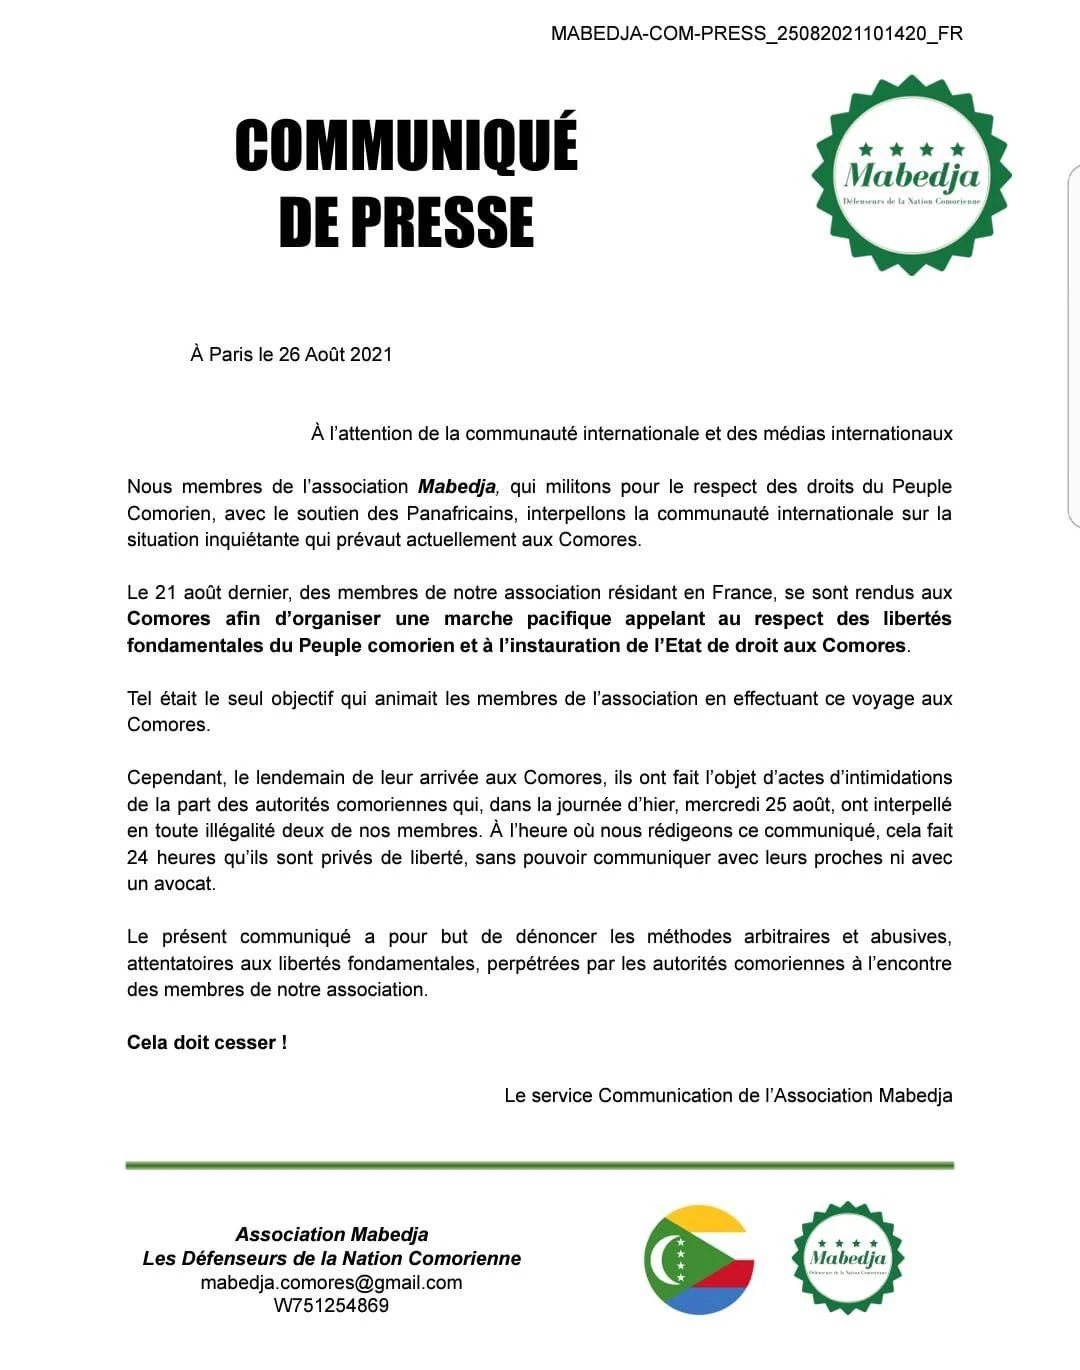 Mabedja interpelle la communauté internationale sur « la situation inquiétante aux Comores »